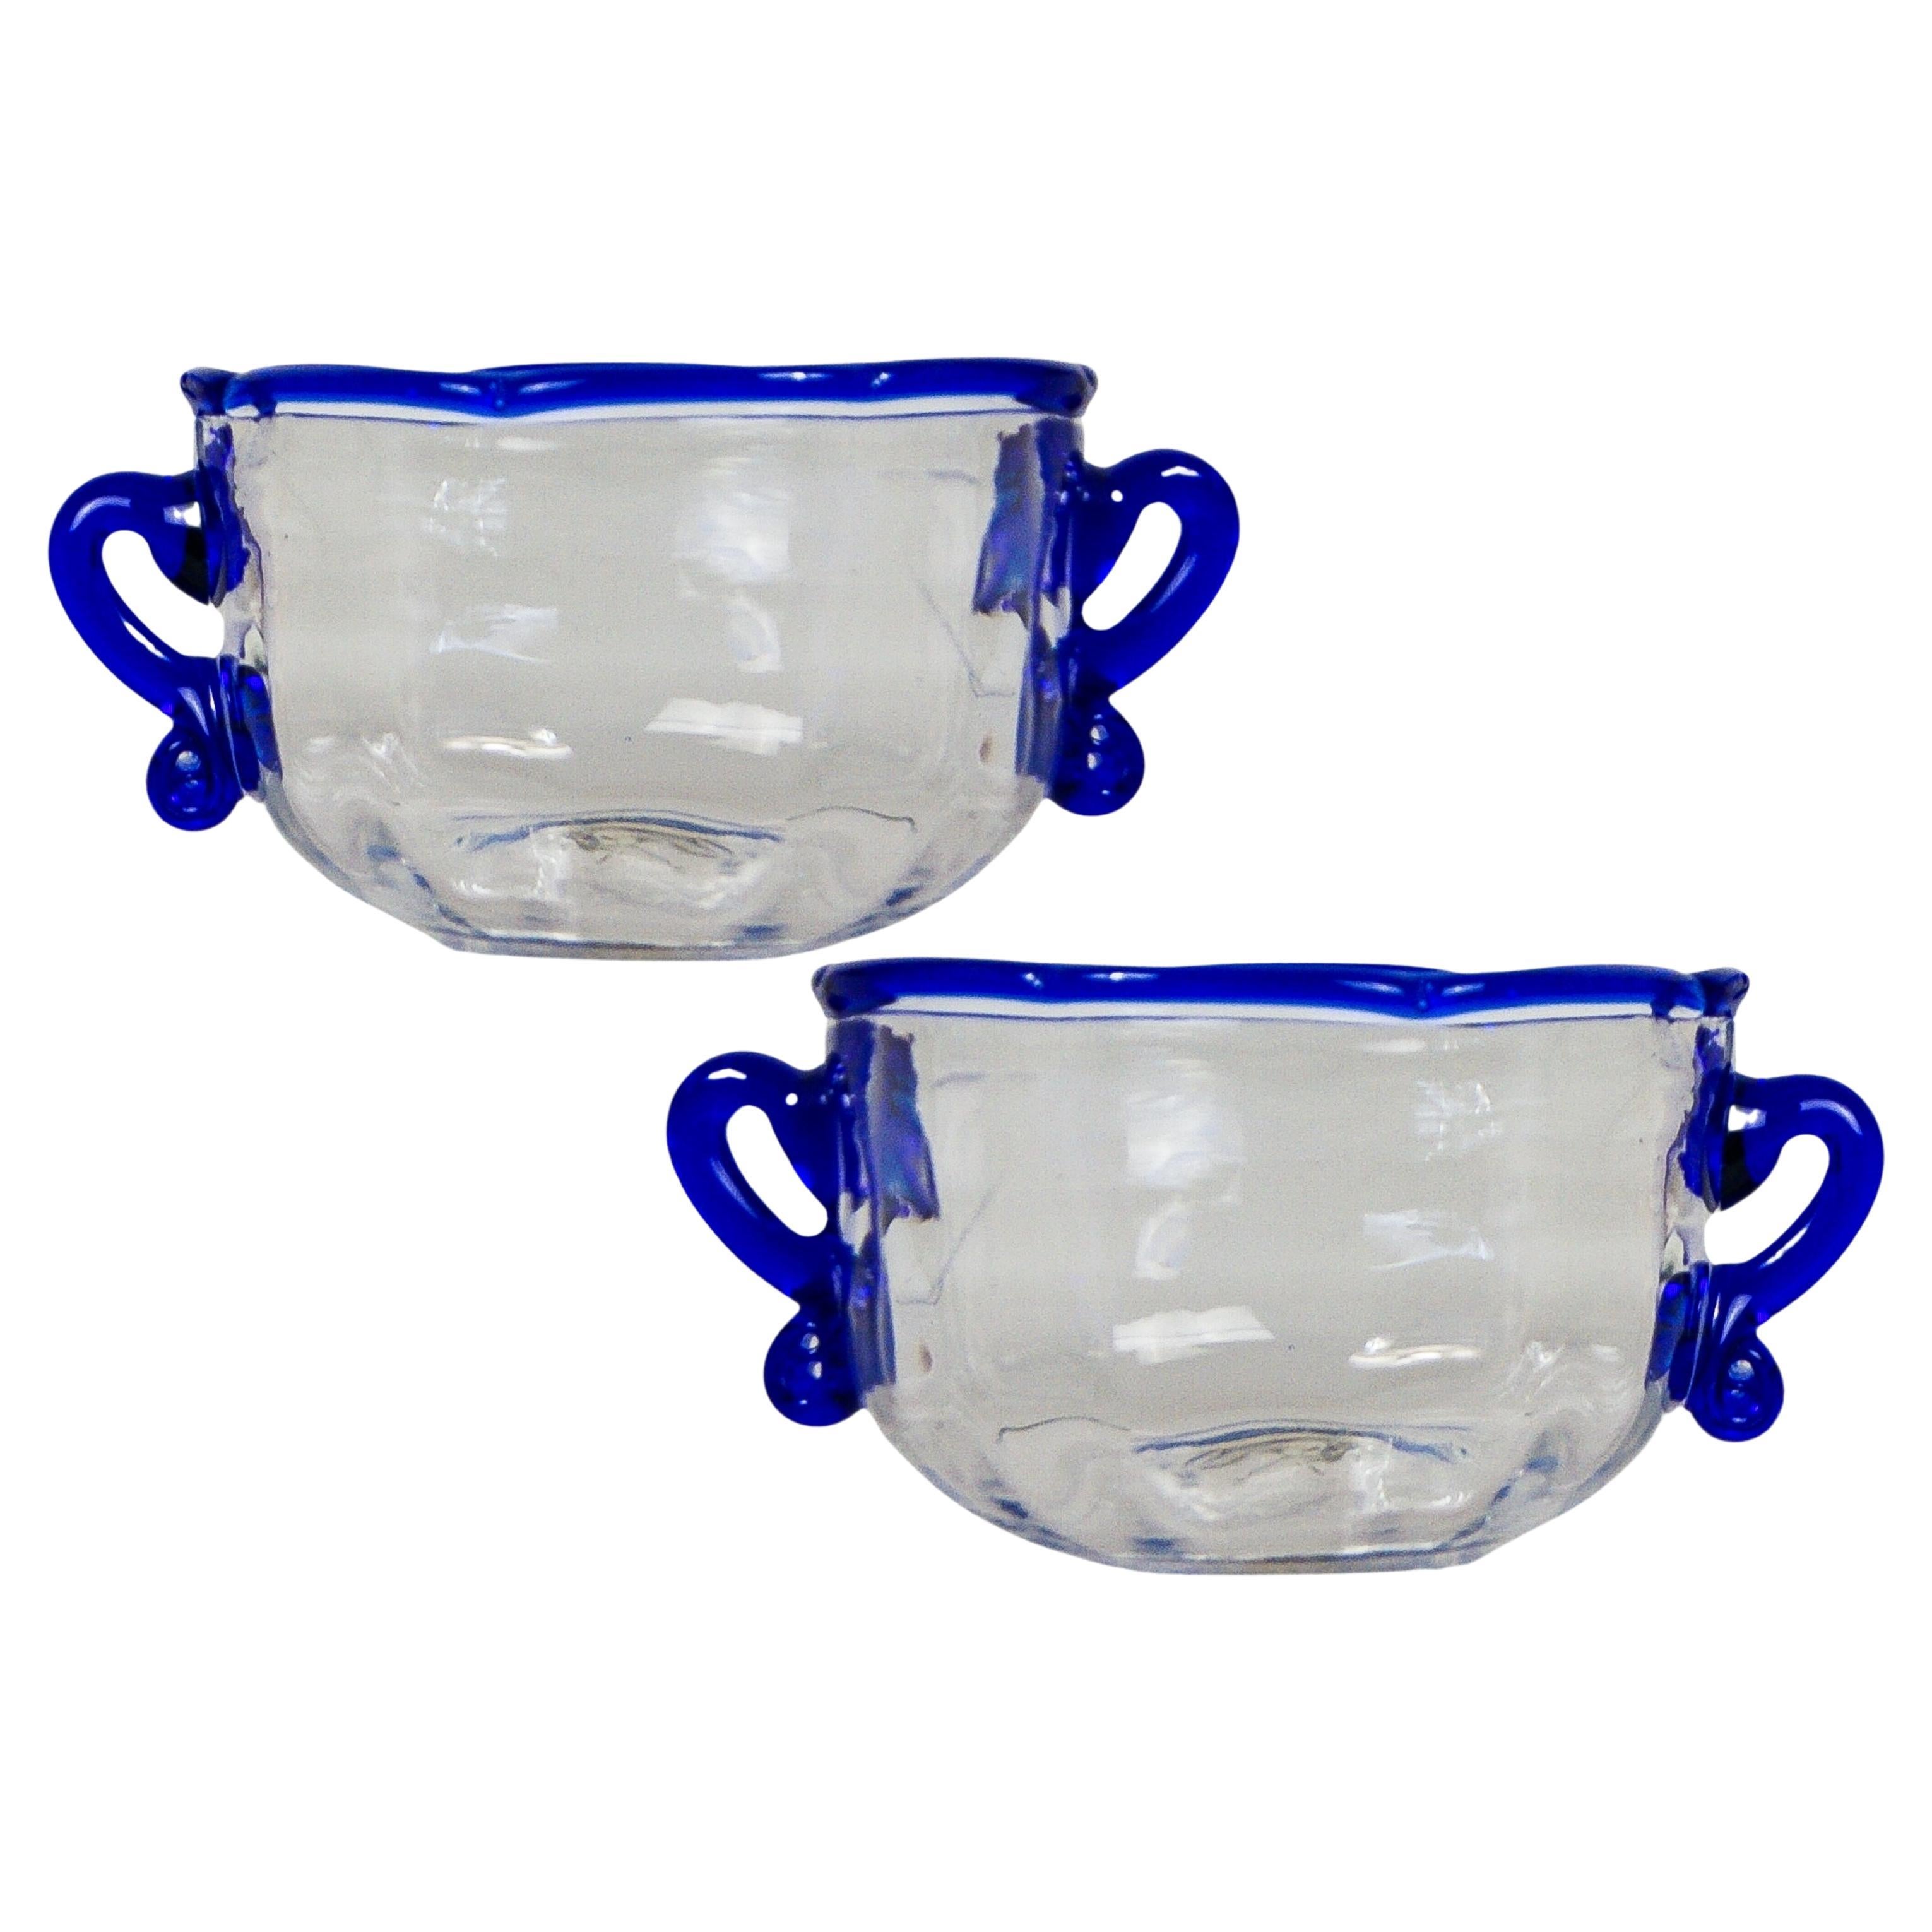 Paire de bols en verre Wrythen de l'époque géorgienne avec bord et poignées bleus appliqués